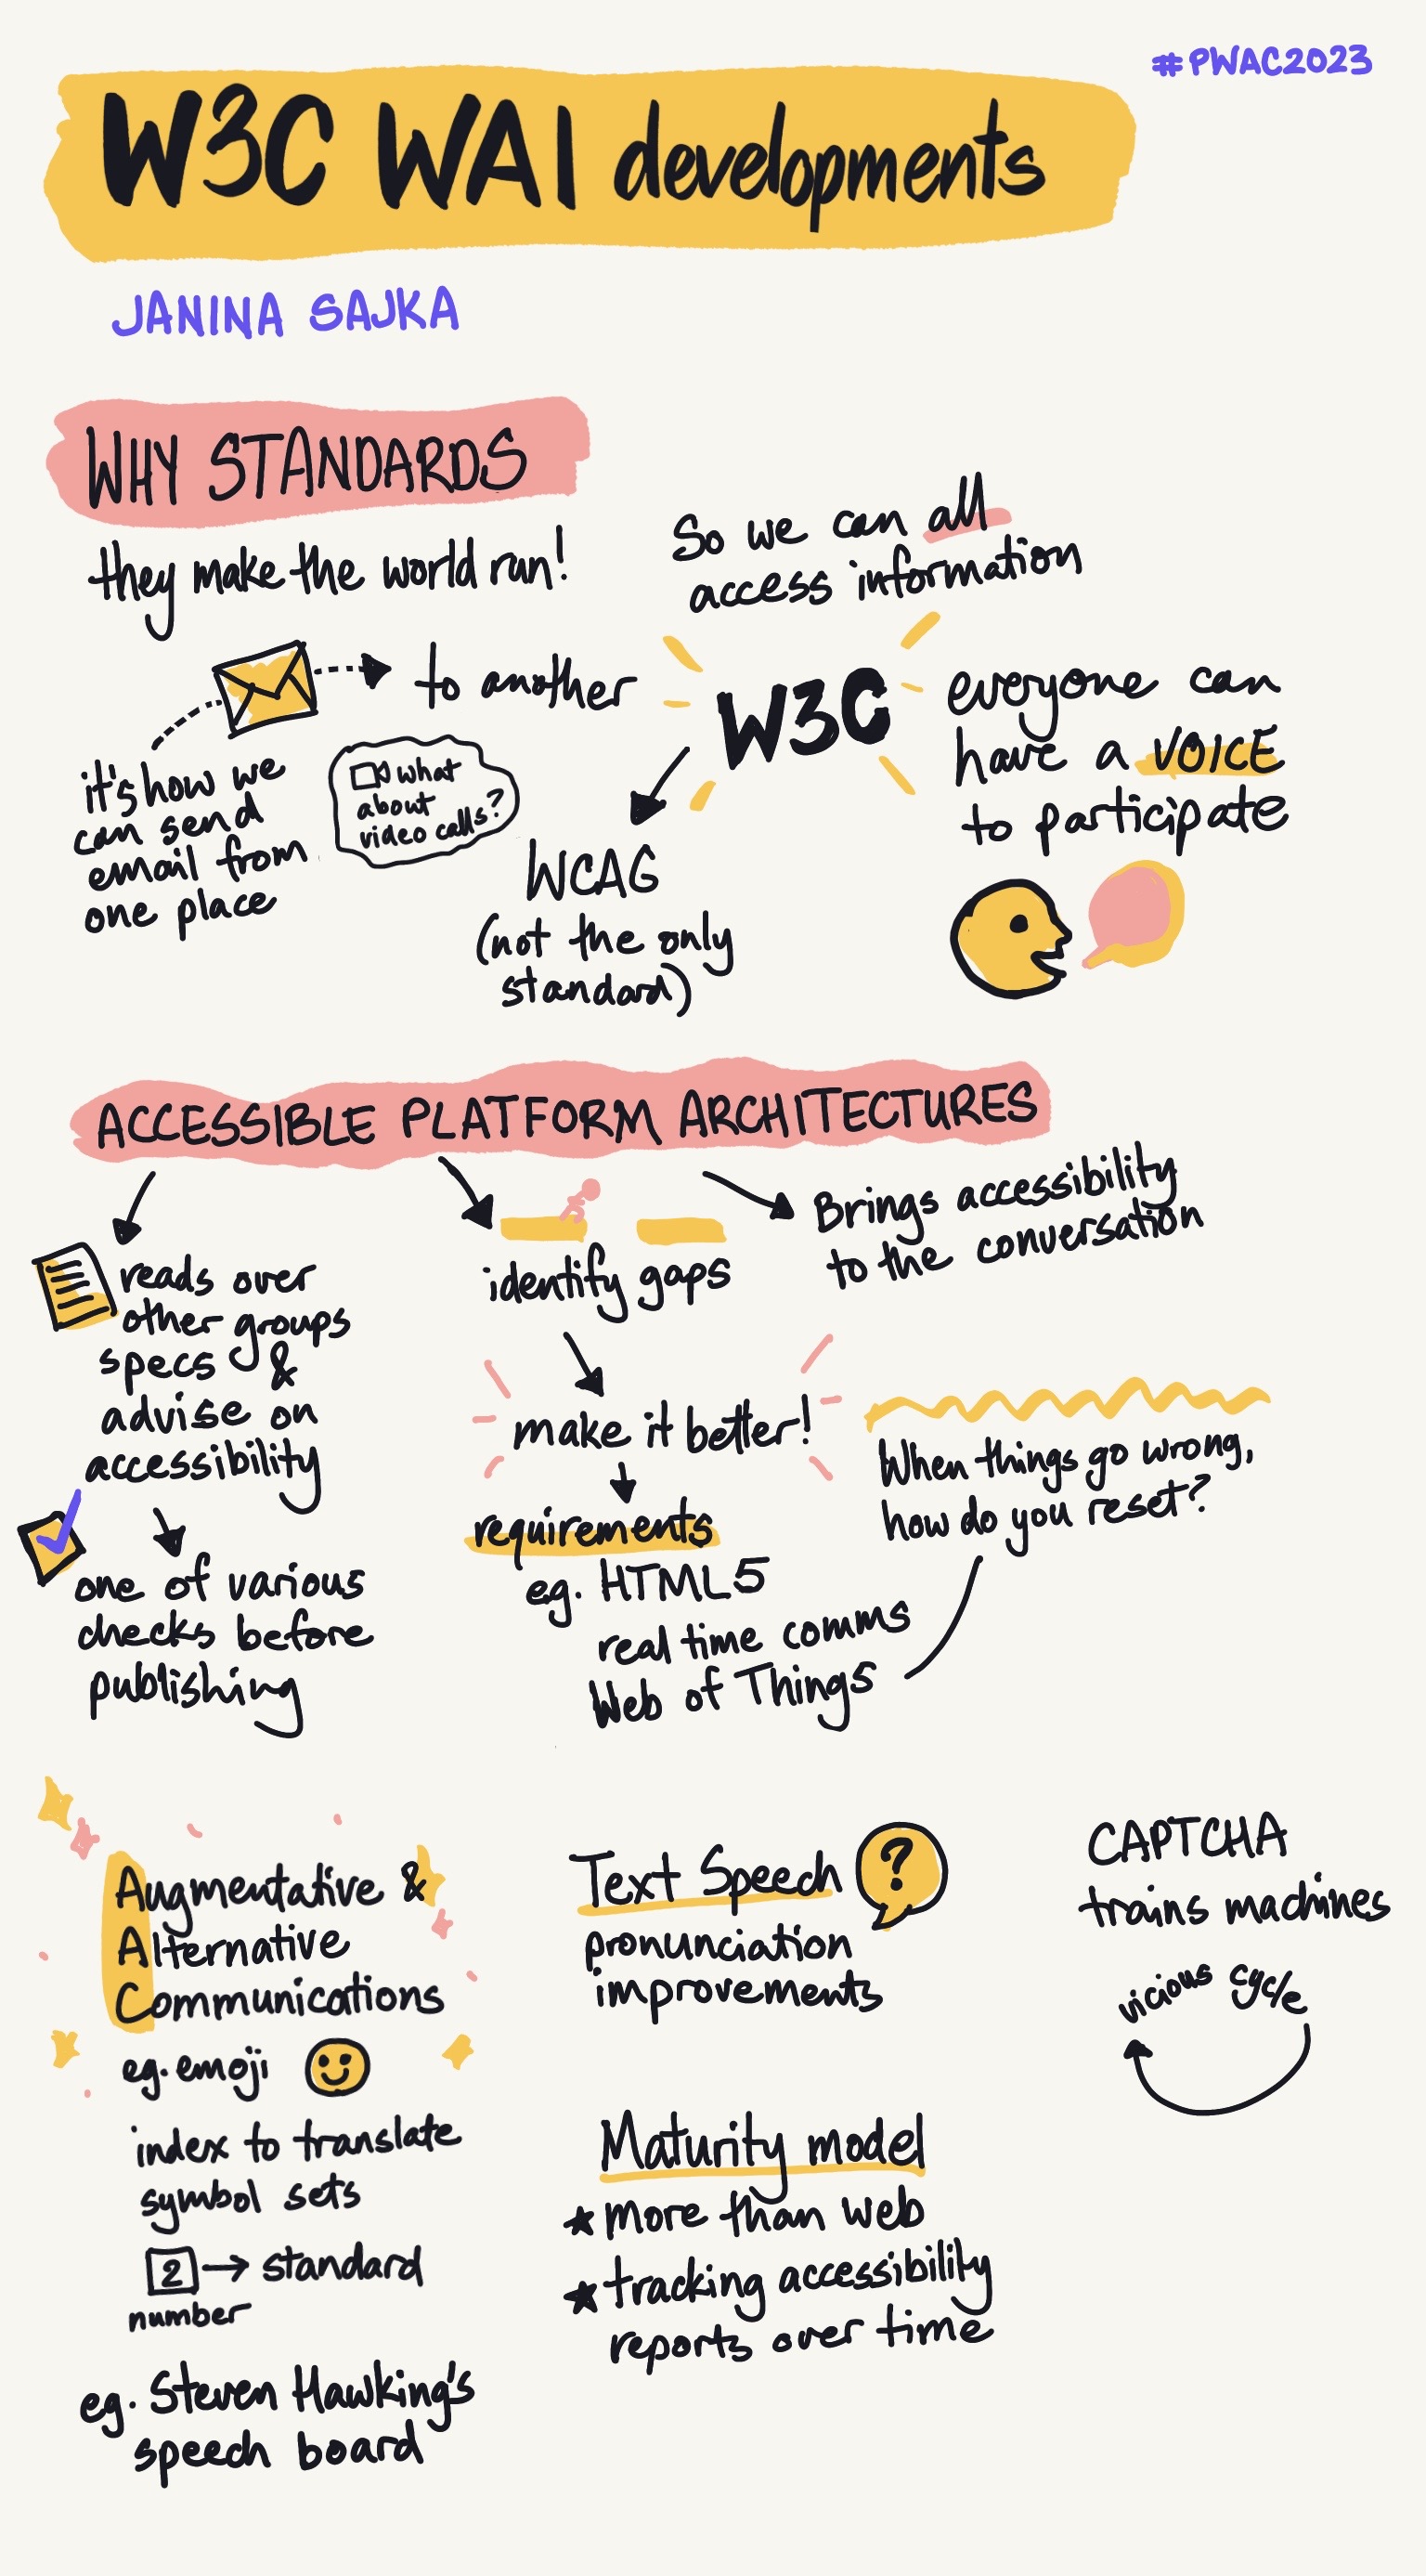 sketchnote of W3C WAI developments, a talk by Janina Sajka